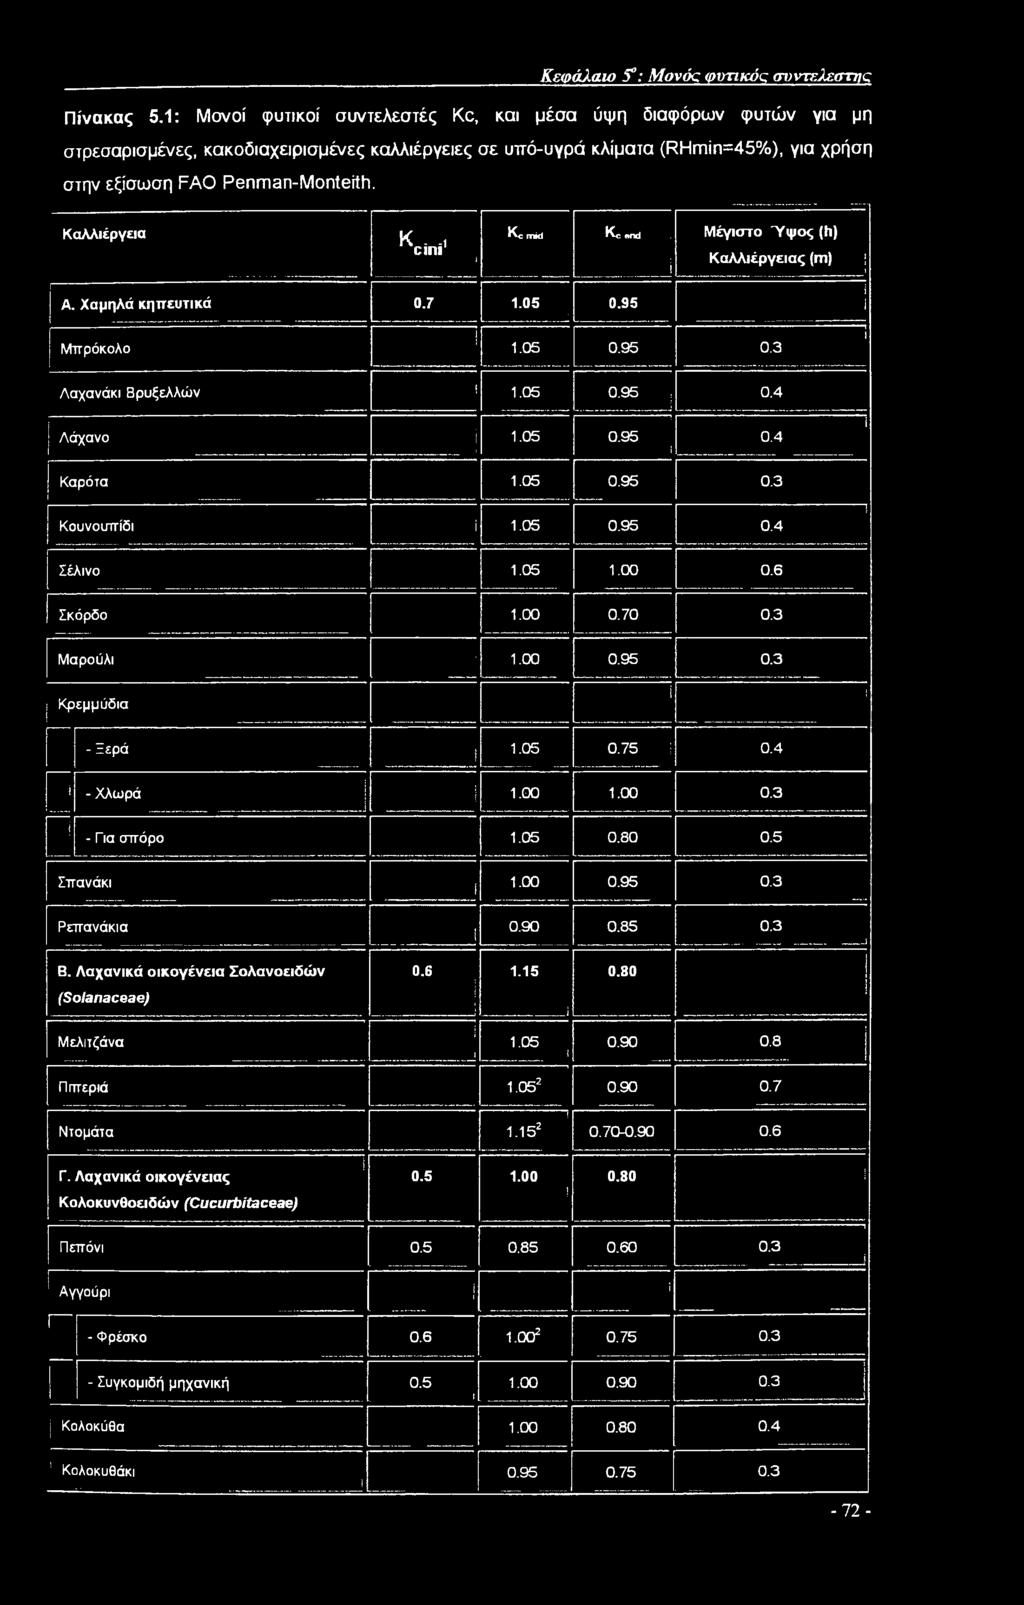 Καλλιέργεια Kcinit i Α. Χαμηλά κηπευτικά 0.7 1.05 Kc mid Kc end i 1 0.95 i Μπρόκολο 1.05 0.95 Μέγιστο Ύψος (h) Καλλιέργειας (m) 0.3 1 1 i ί Λαχανάκι Βρυξελλών 1.05 0.95 0.4 ; Λάχανο 1.05 0.95 1 0.